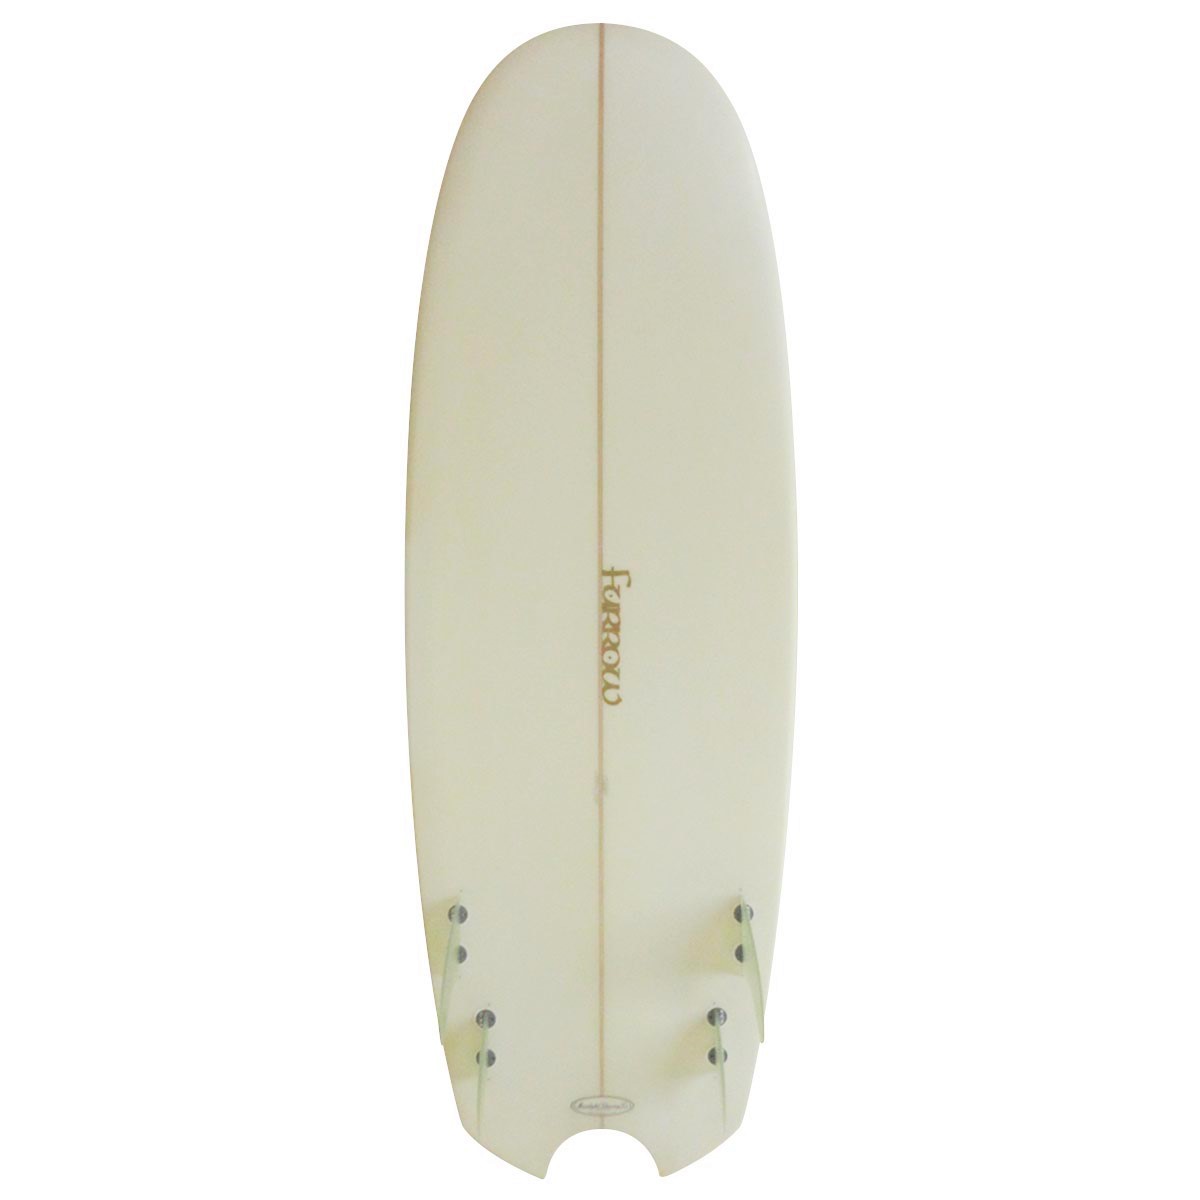 サーフボードギャラリー Used Surf×surf Market